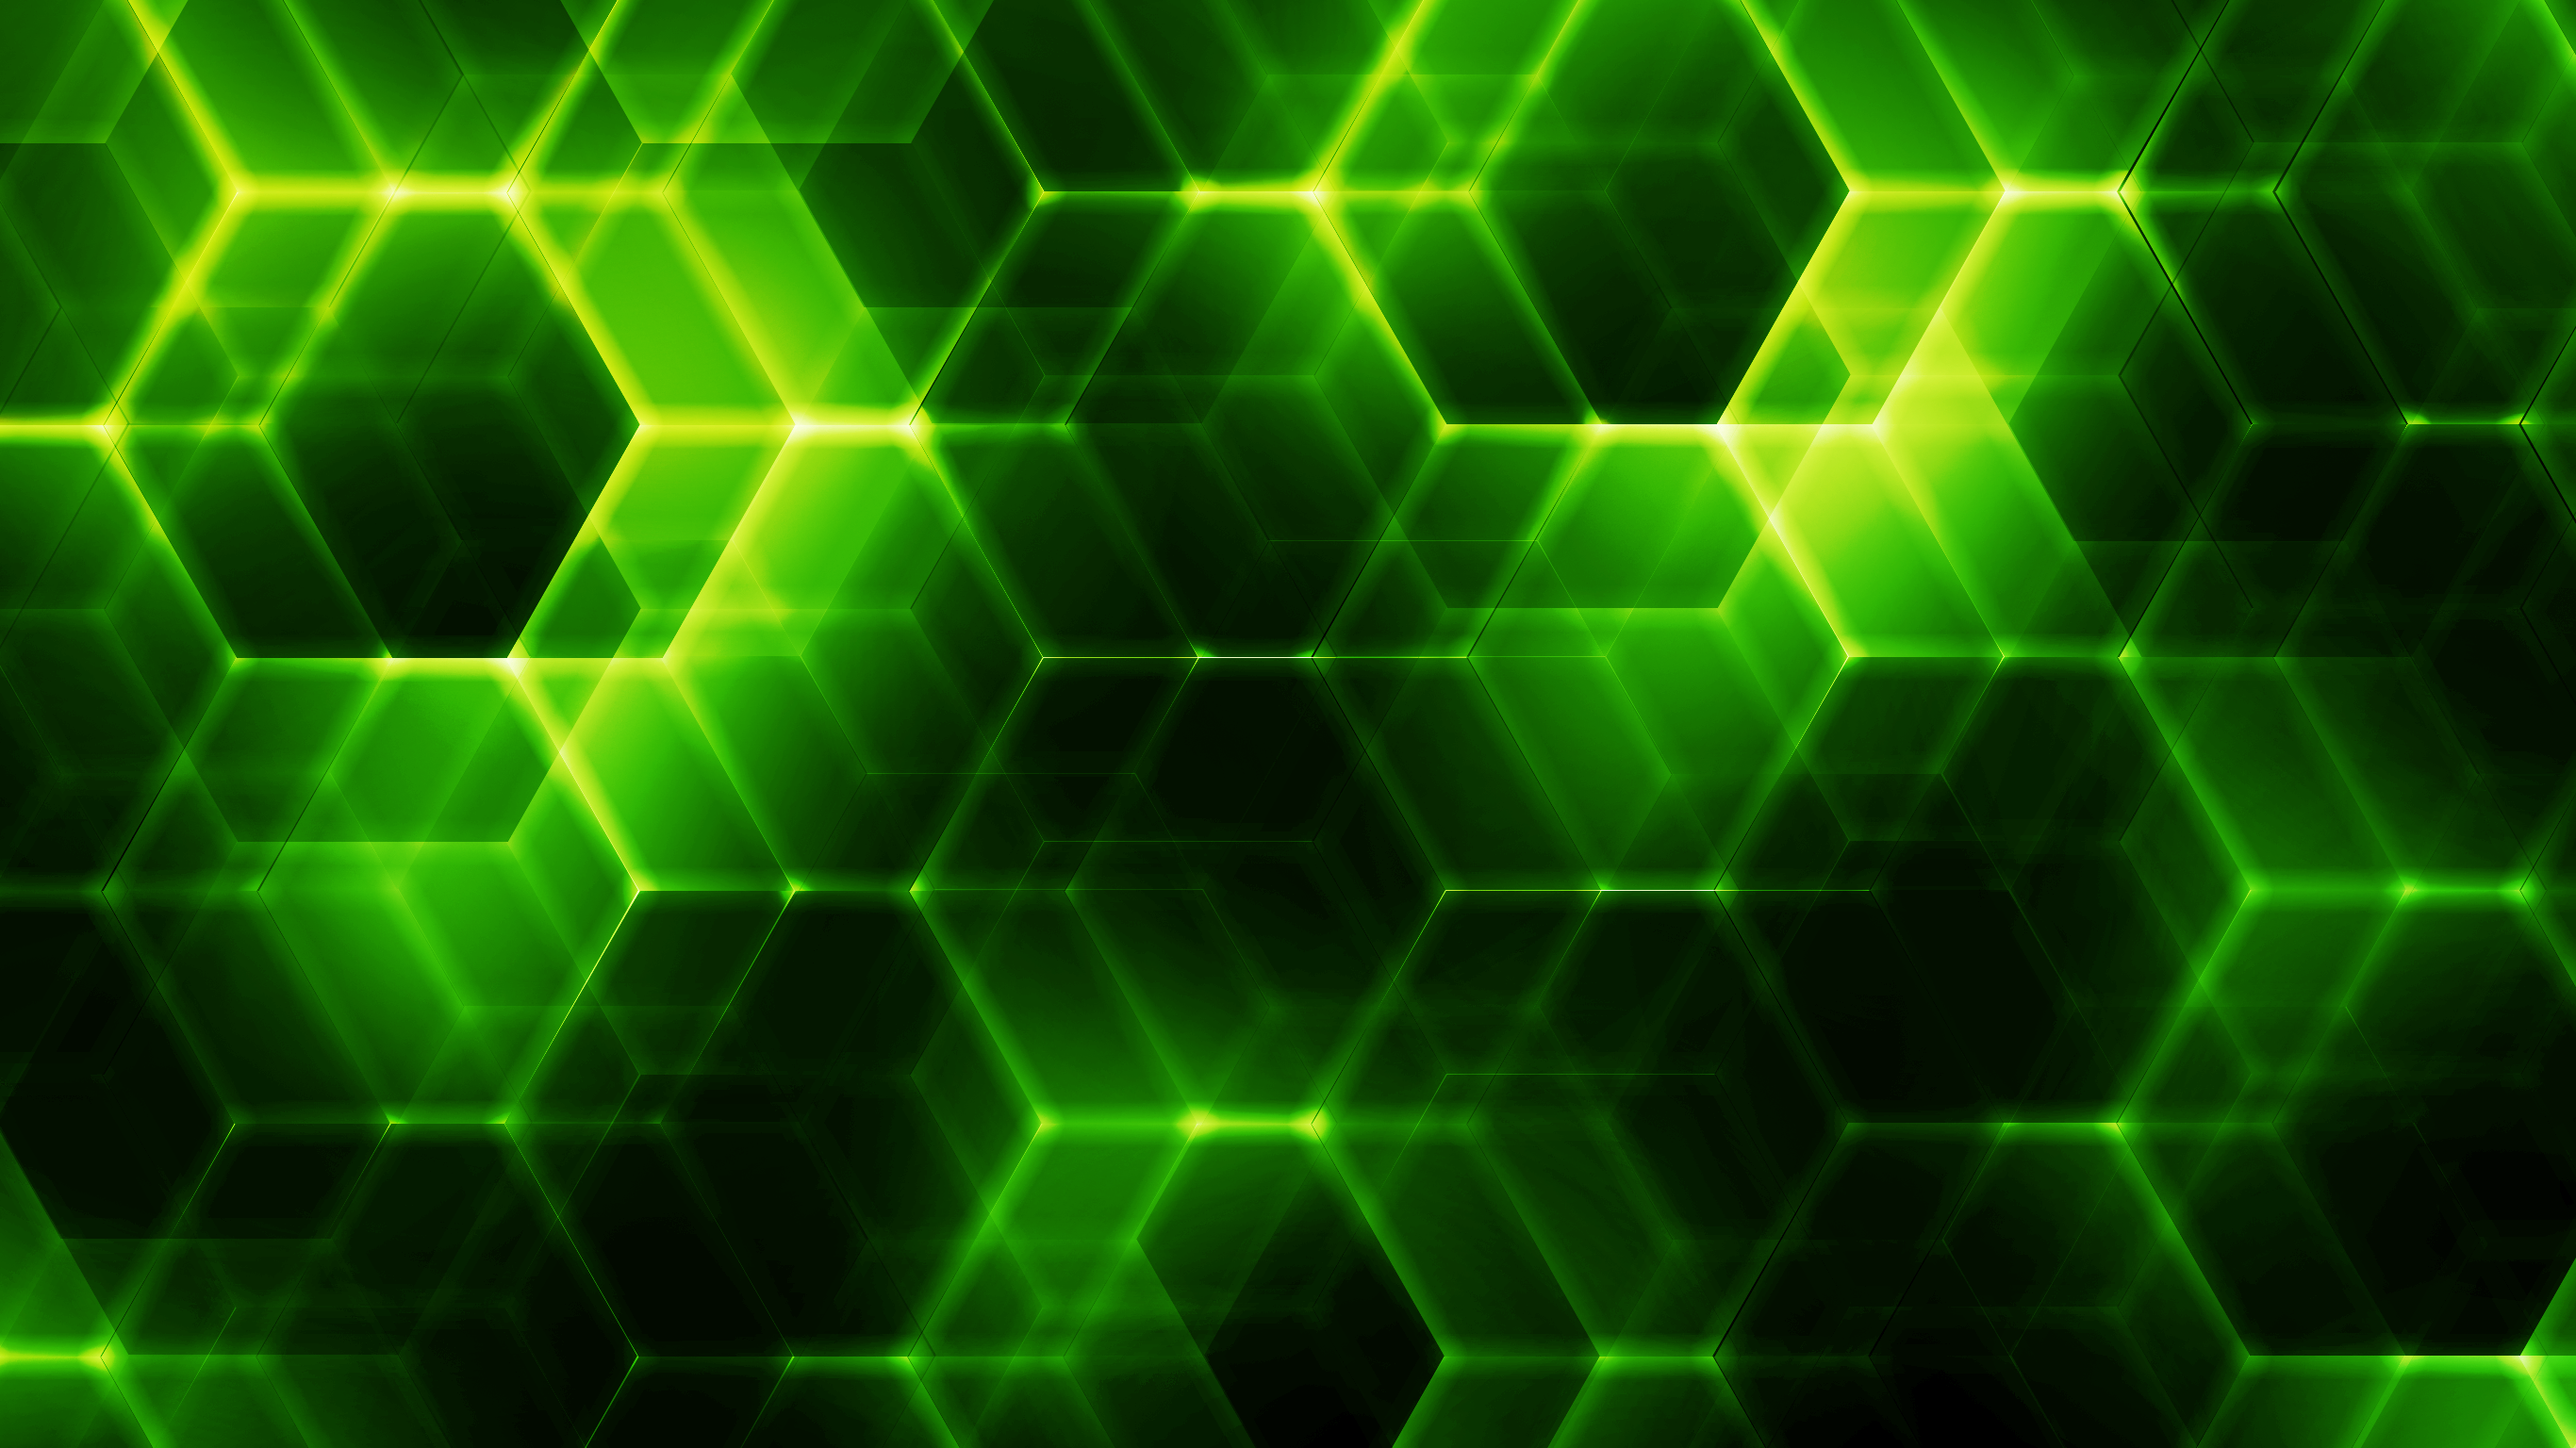 Abstract Hexagon FirstLightStudios Green 2732x1536